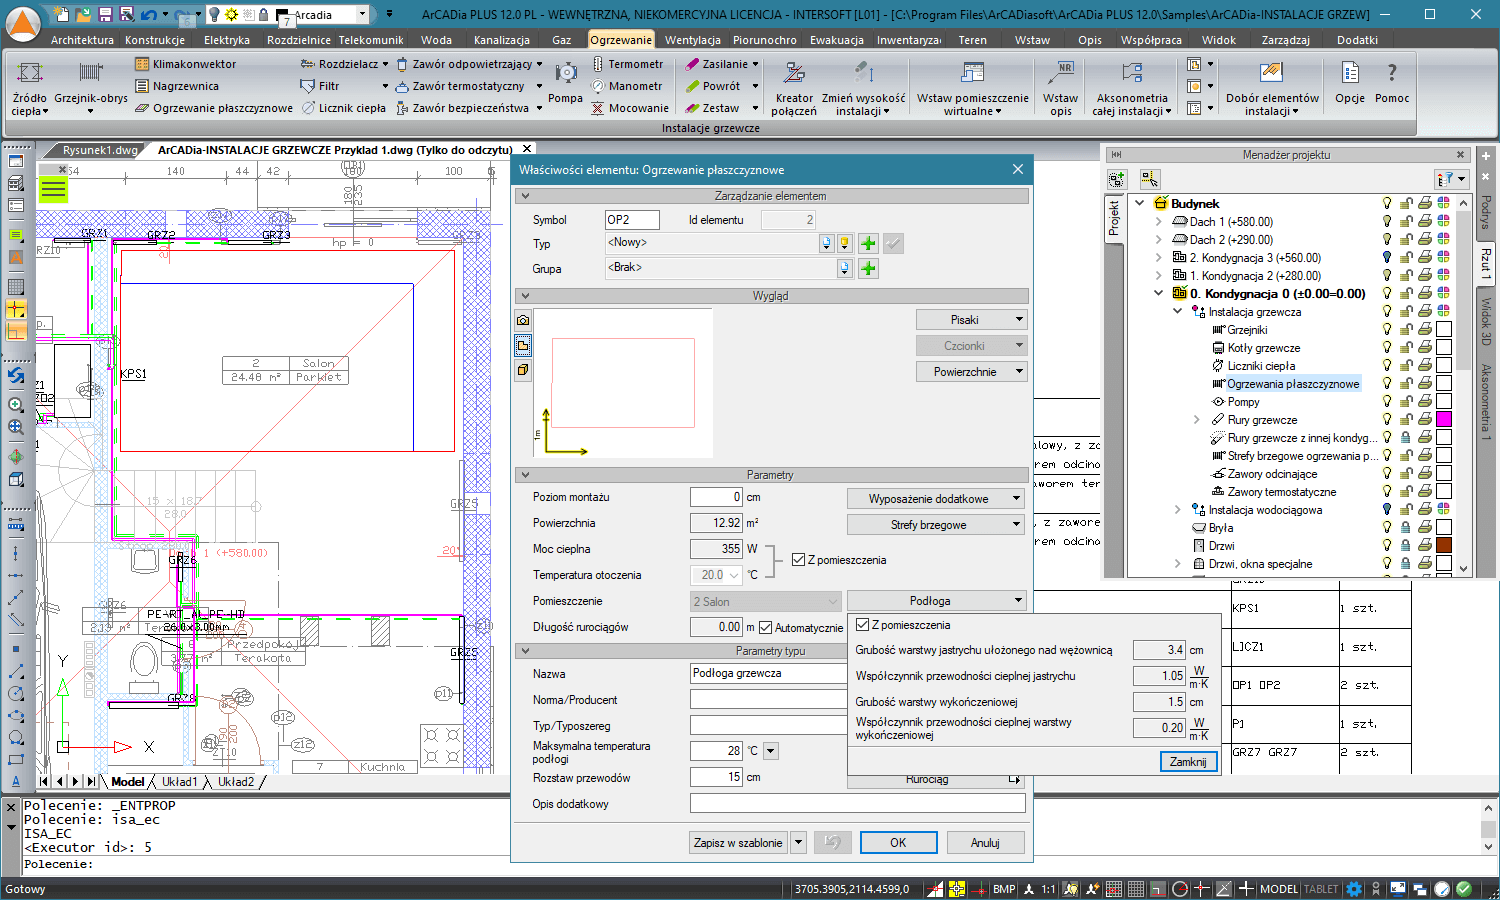 ArCADia-INSTALACJE GRZEWCZE 2 | INTERsoft program CAD